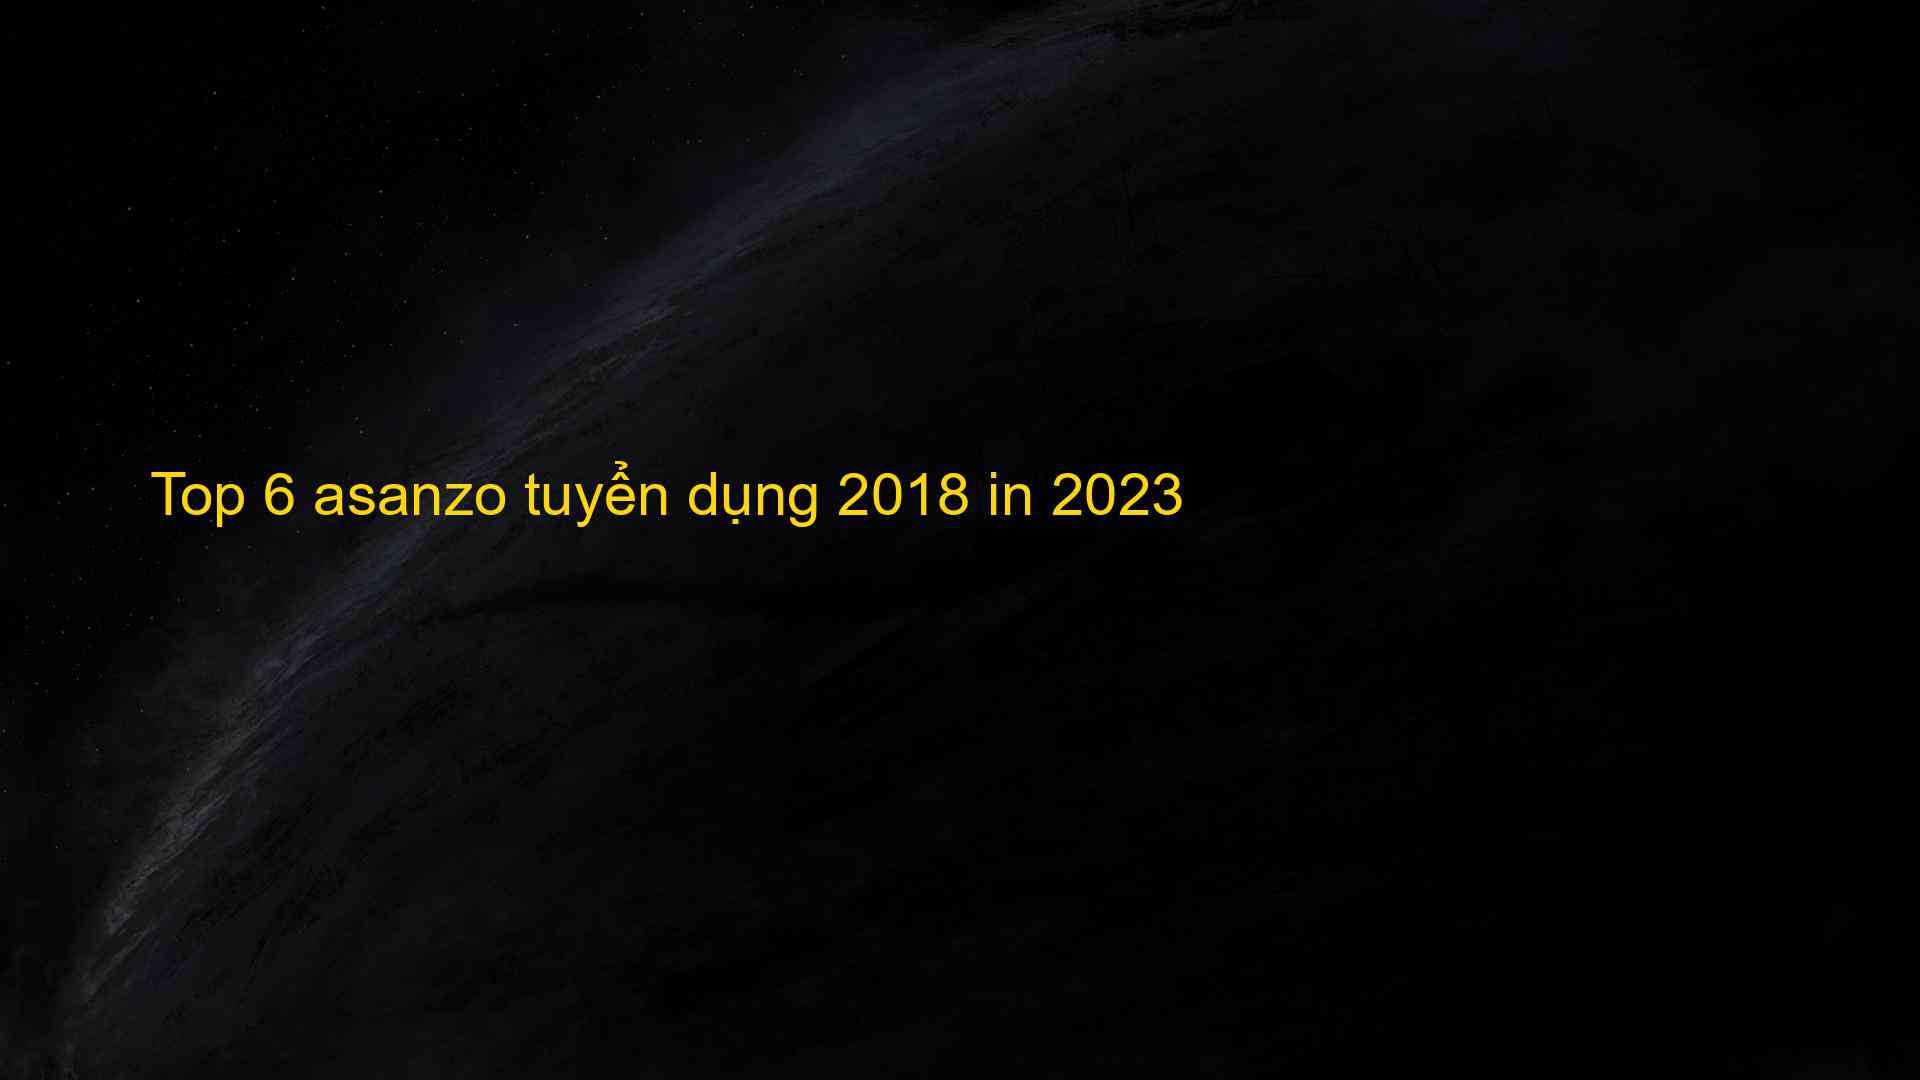 Top 6 asanzo tuyển dụng 2018 in 2023 - Chia Sẻ Kiến Thức Điện Máy Việt Nam